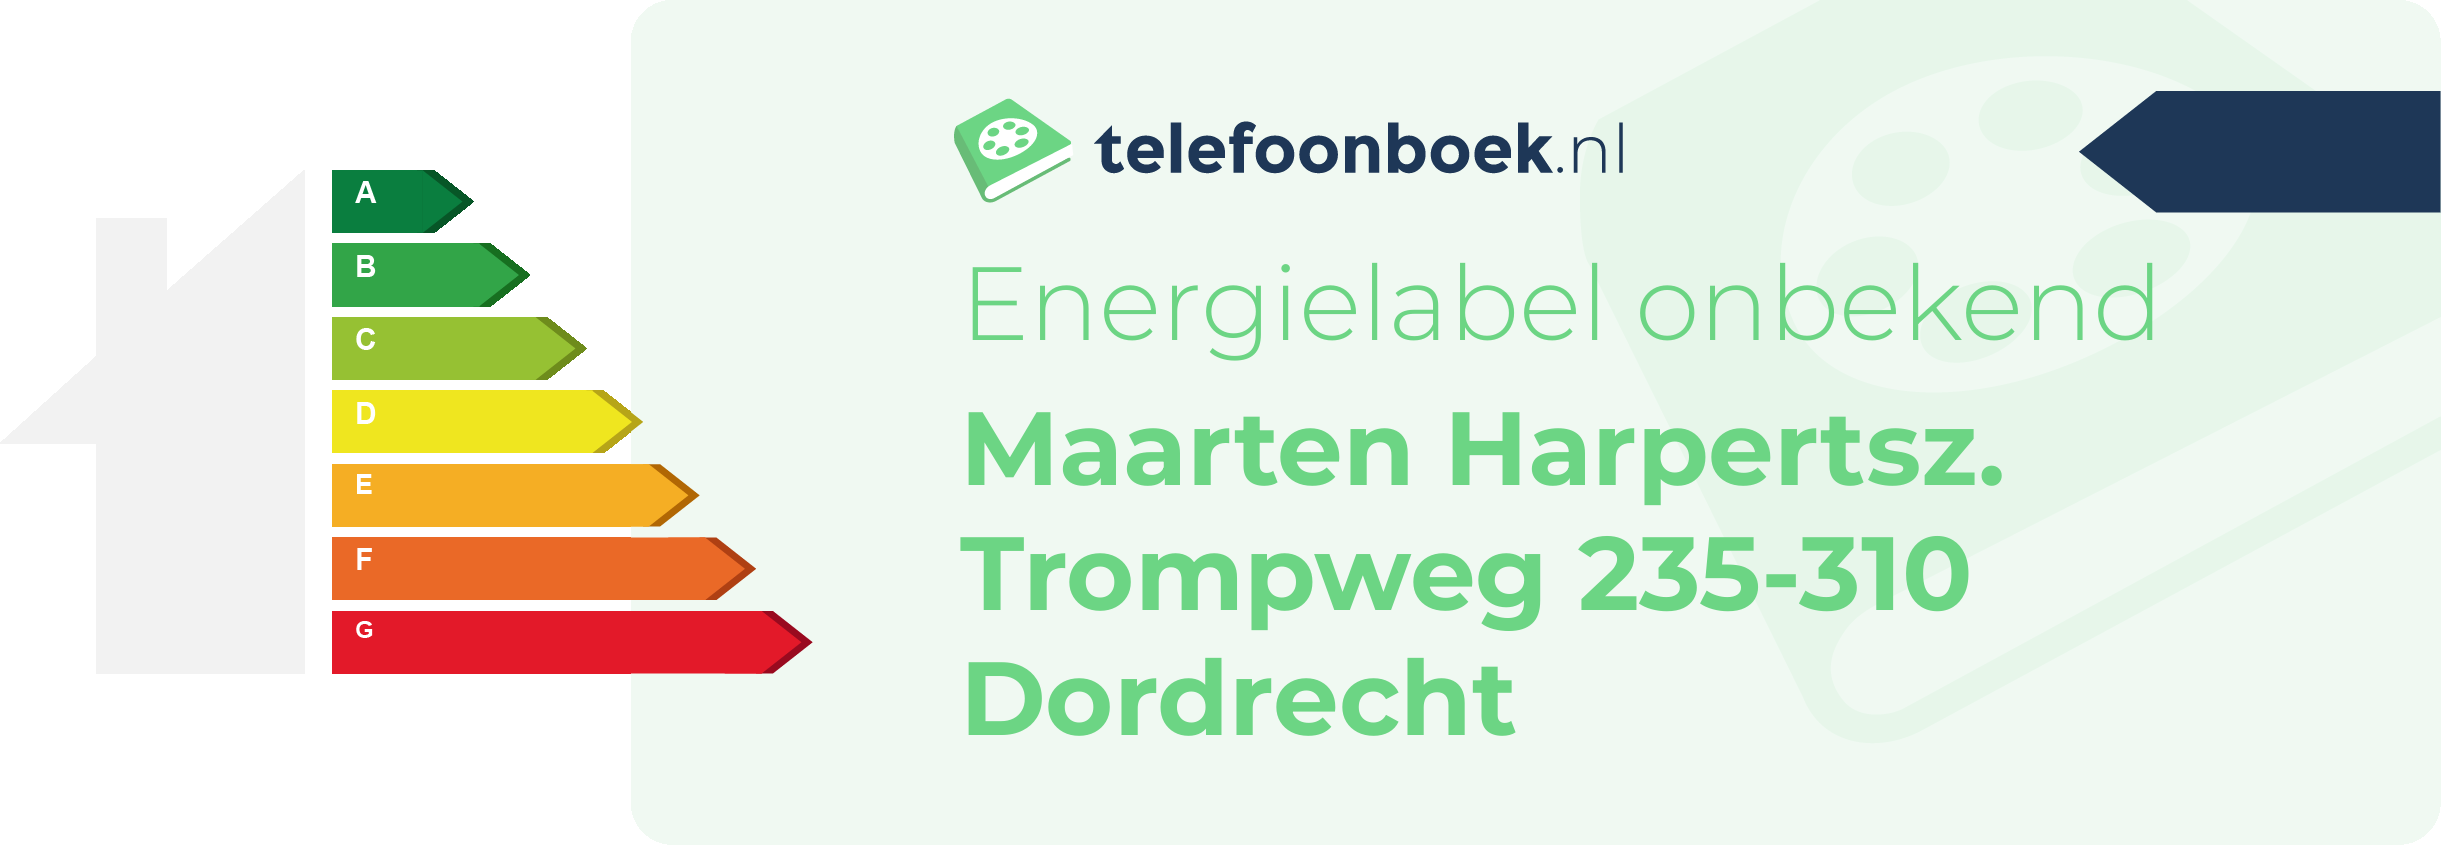 Energielabel Maarten Harpertsz. Trompweg 235-310 Dordrecht